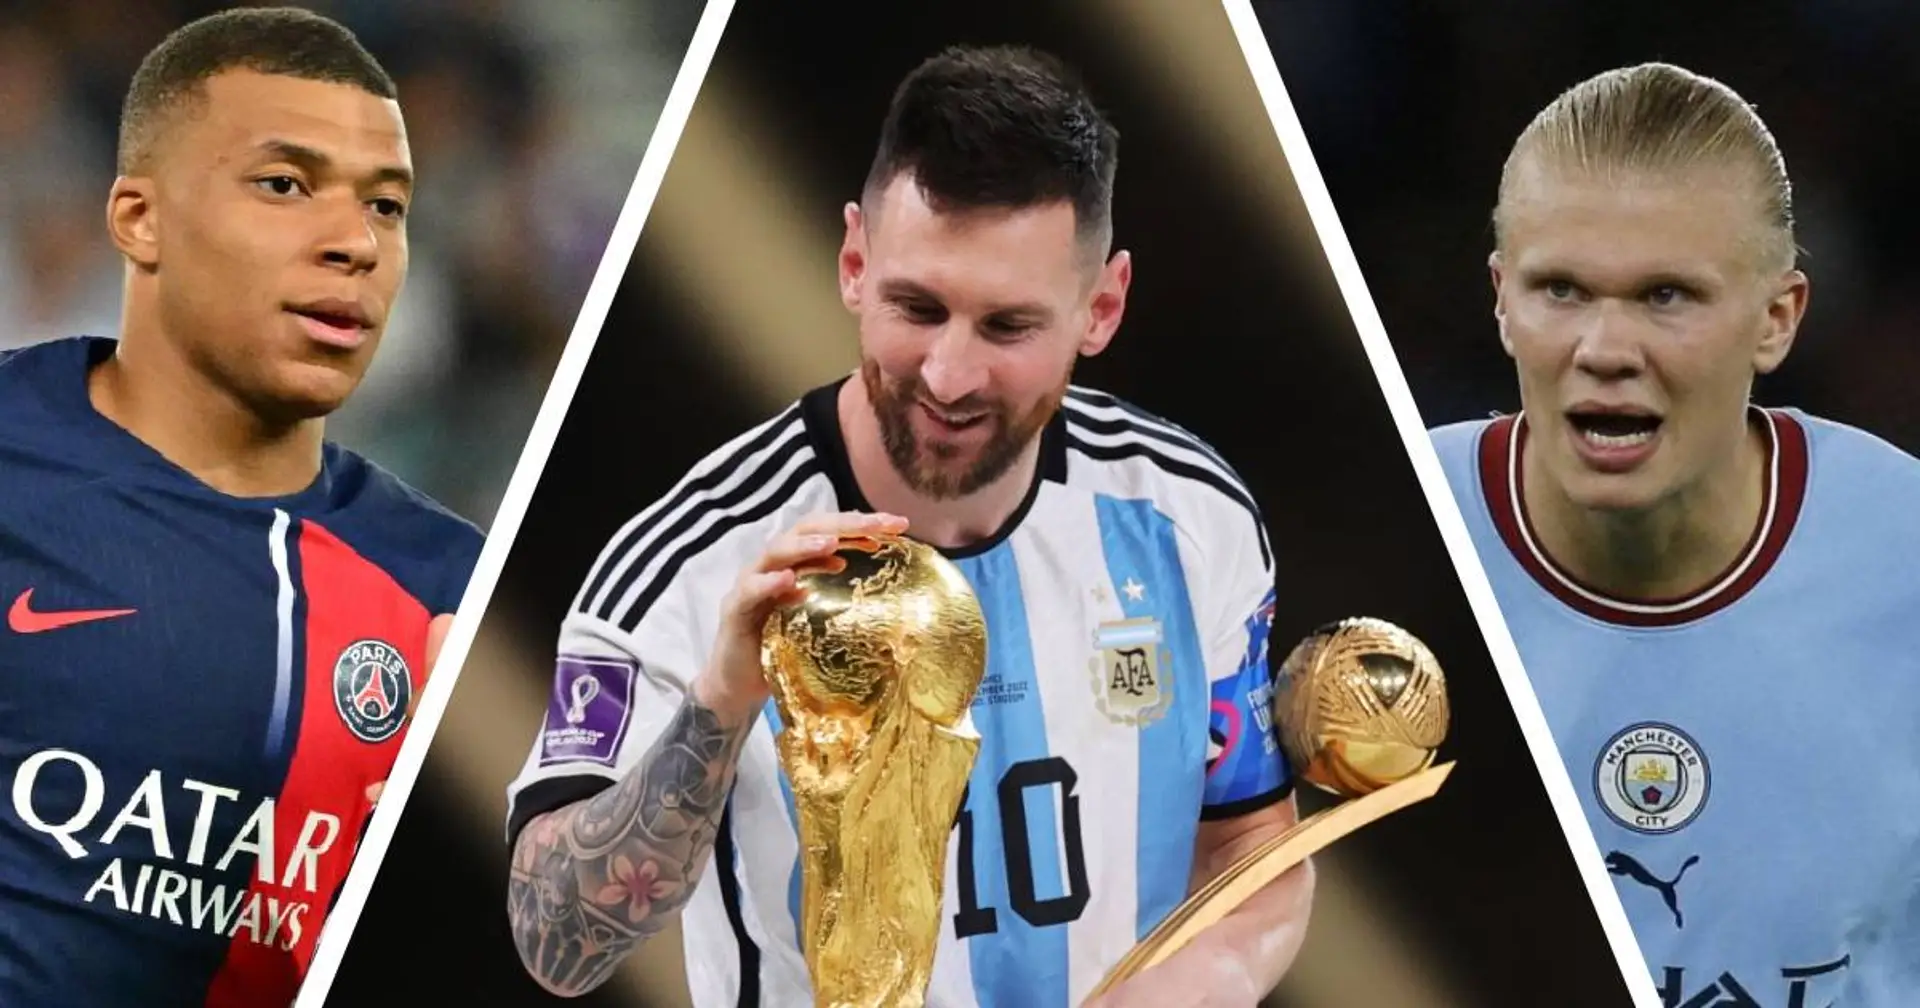 Adrien Rabiot donne son avis sur le futur vainqueur du Ballon d'or - les fans de Messi vont pas être contents